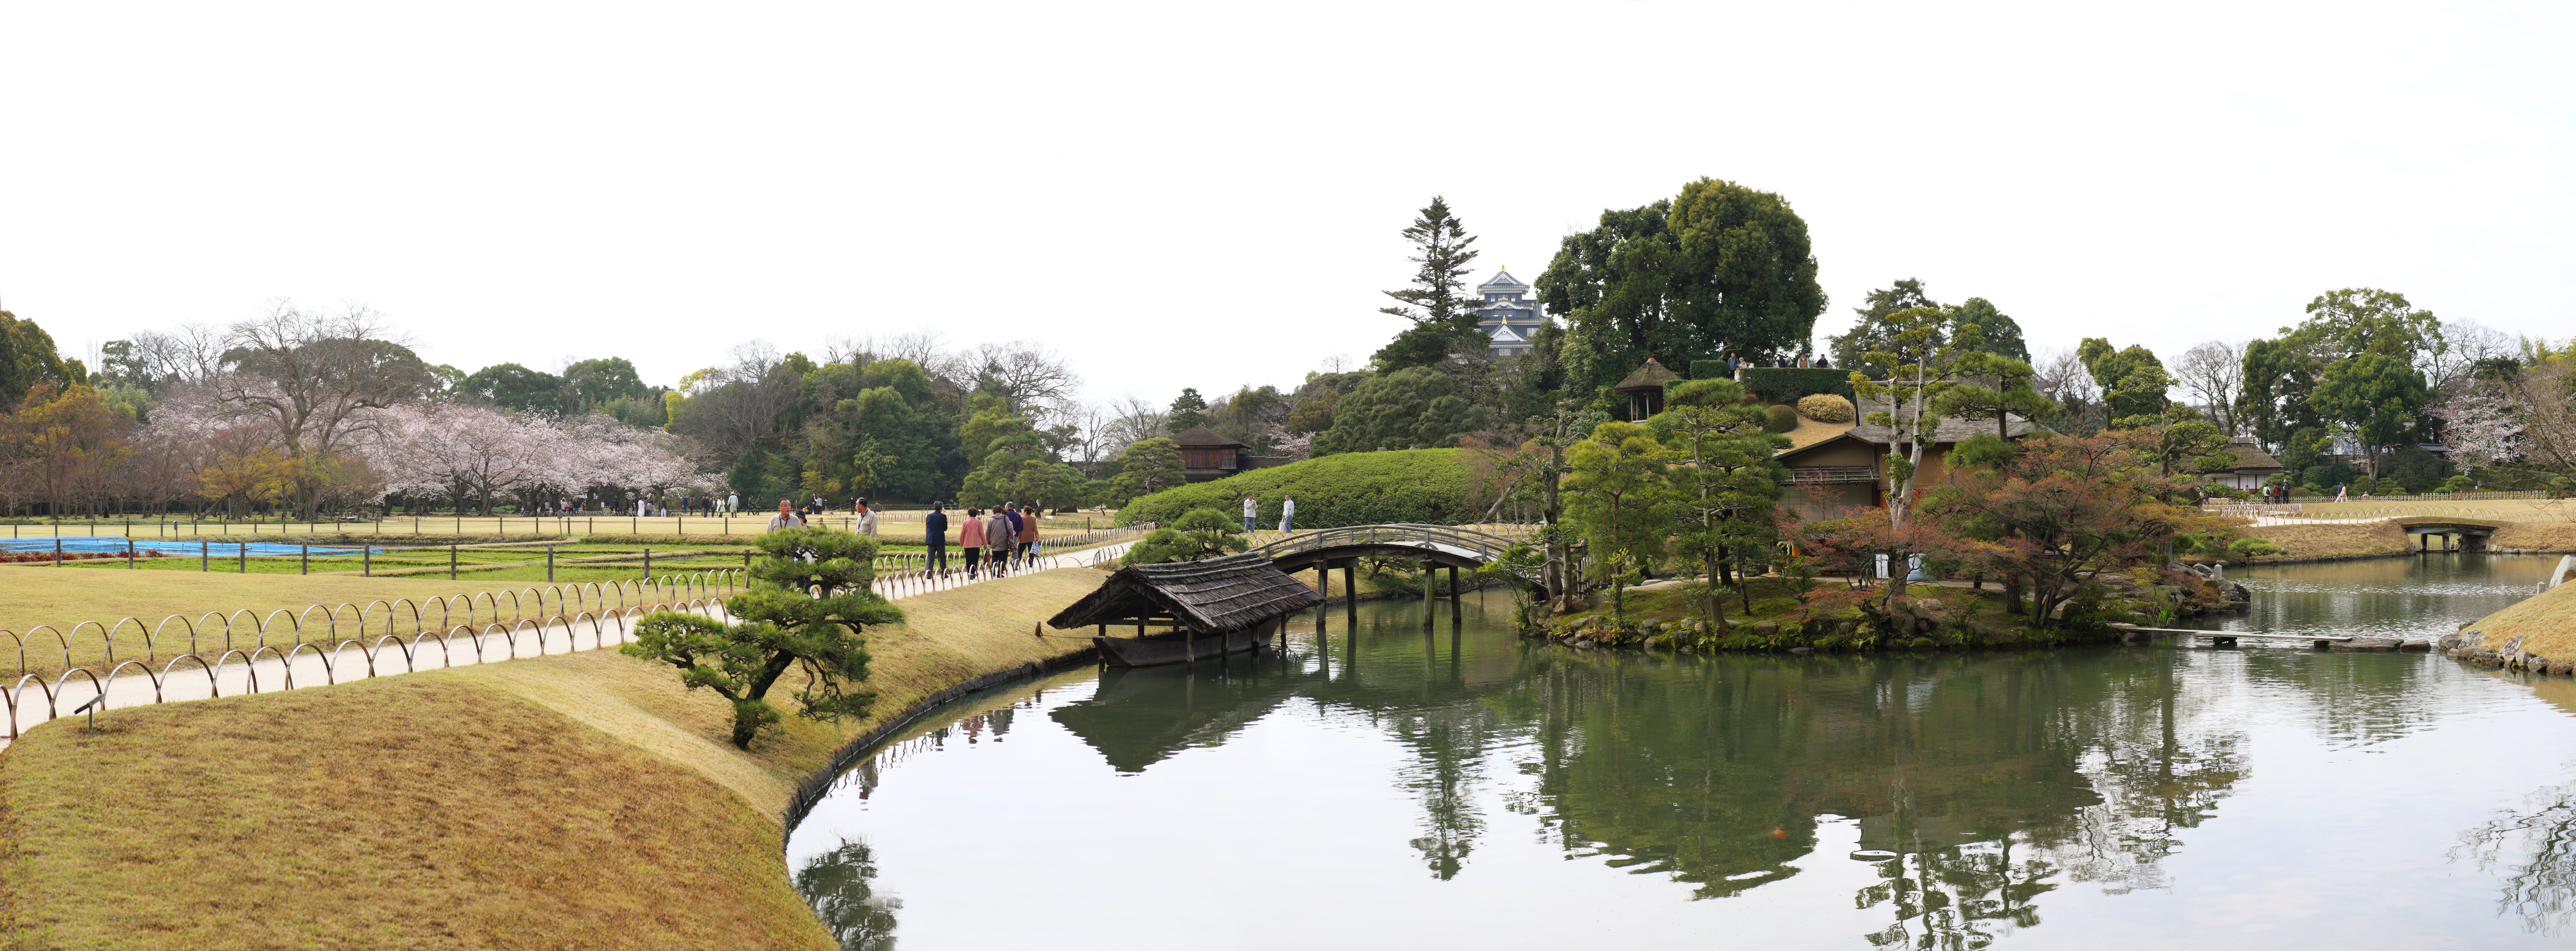 fotografia, material, livra, ajardine, imagine, proveja fotografia,A lagoa do Koraku-en Jardim pntano, barraca descansando, castelo, rvore de cereja, Japons ajardina